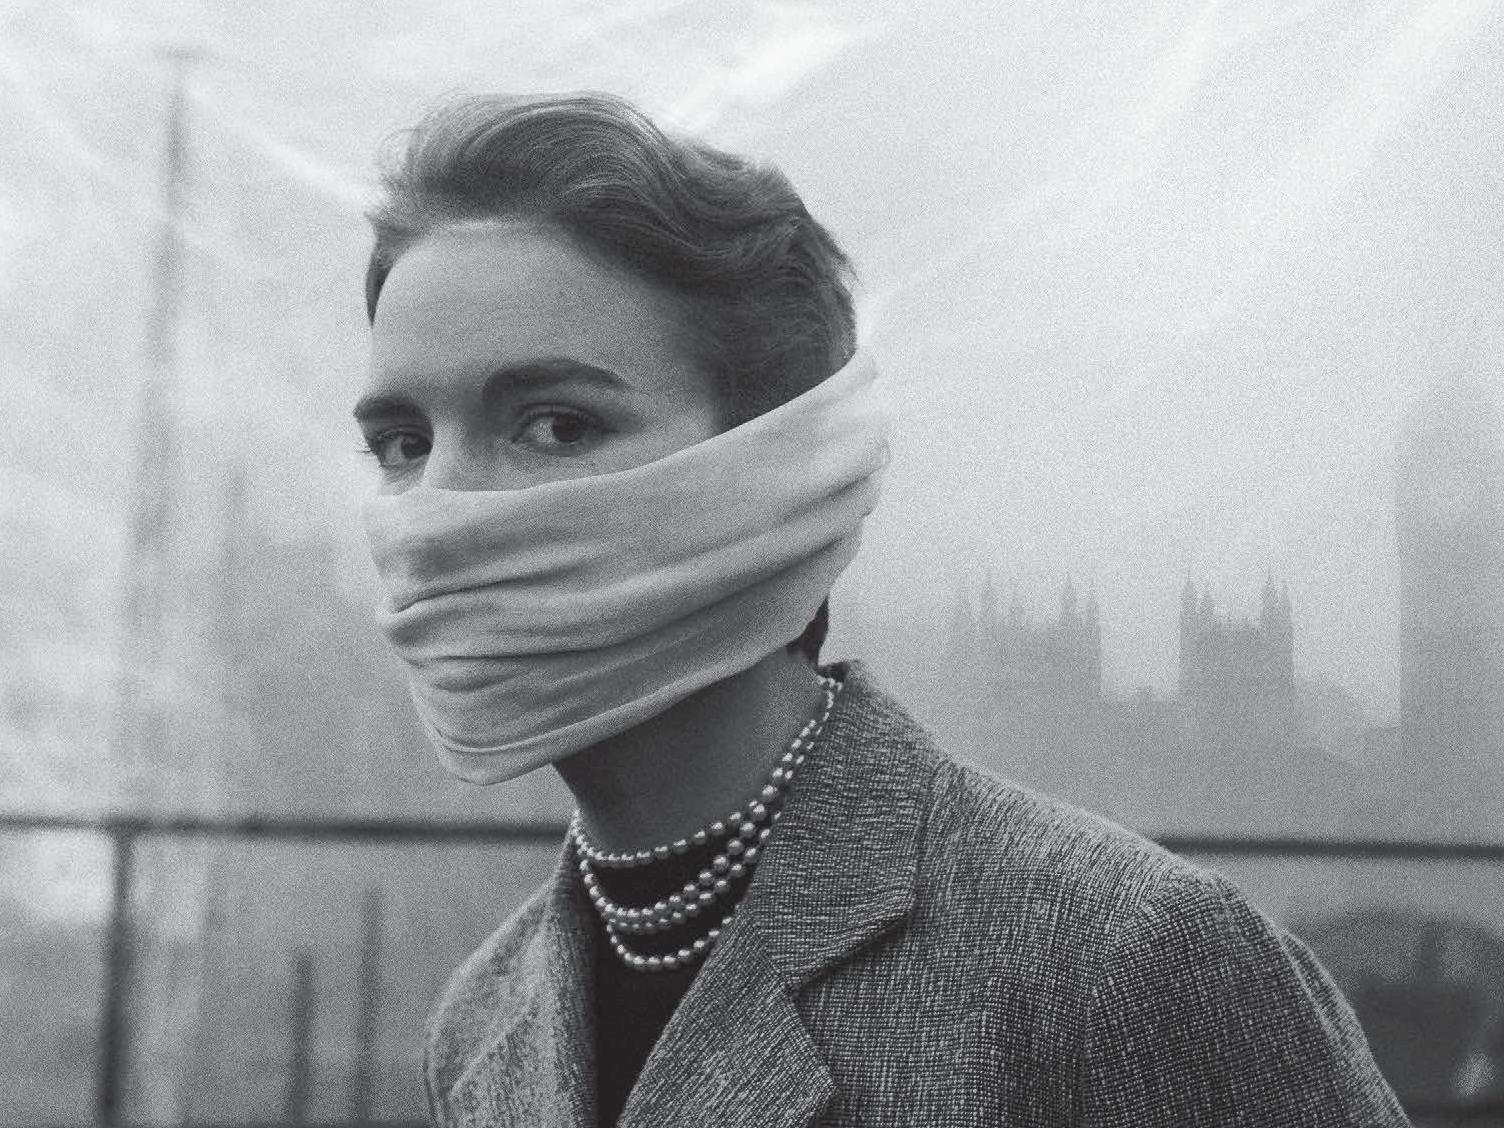 สุภาพสตรีชาวลอนดอนป้องกันหมอกพิษอย่างคงความสวยงาม l ภาพจาก หน้าปกหนังสือ Death in the air